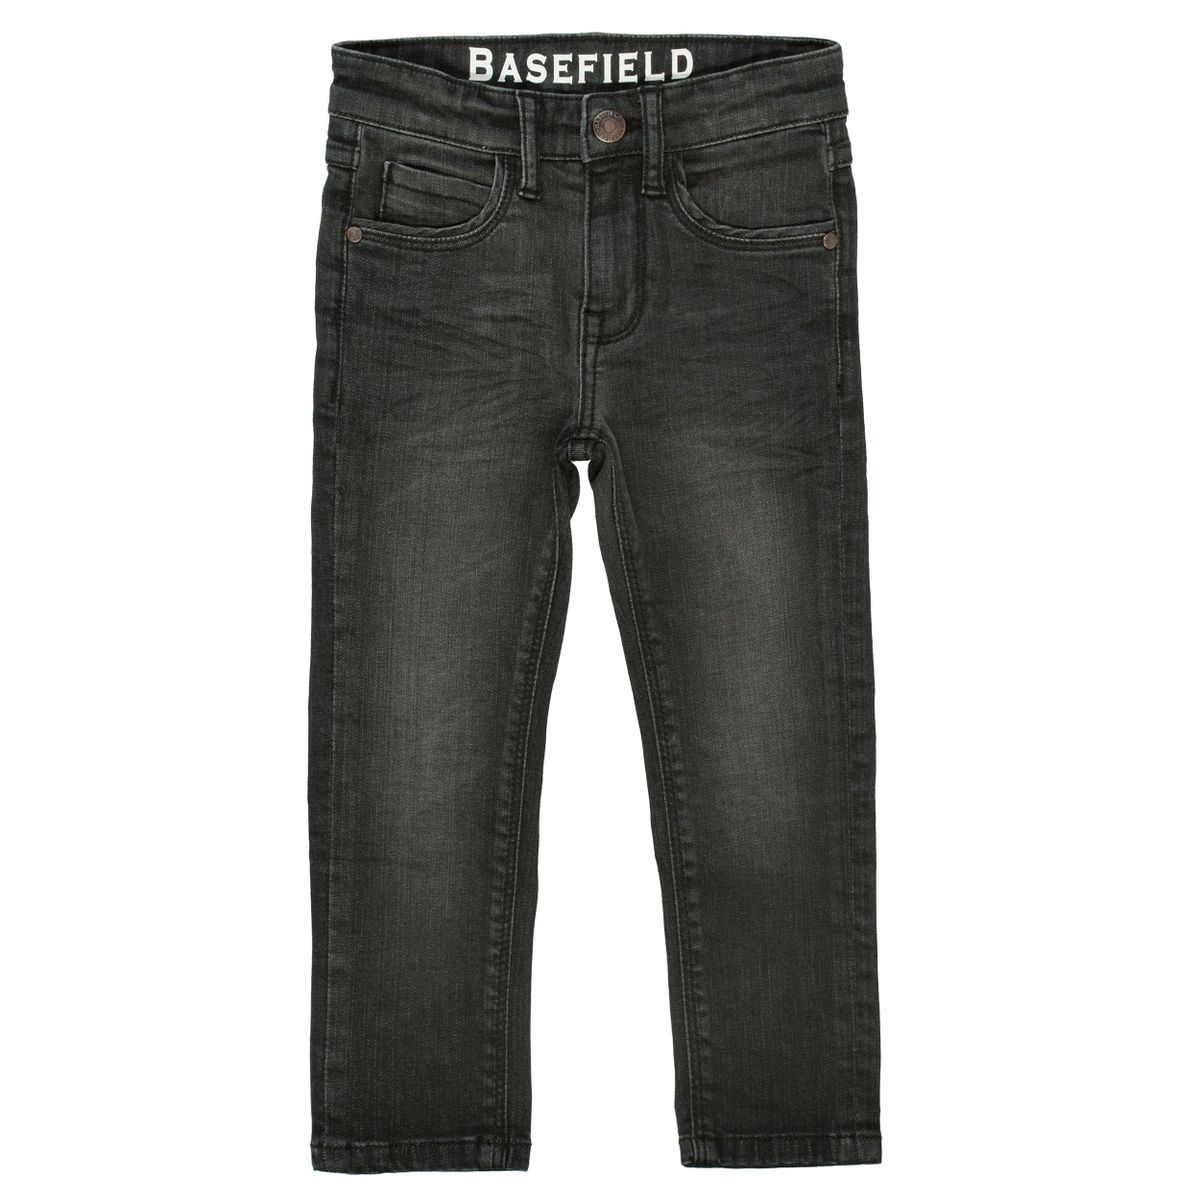 BASEFIELD Jeans mit verwaschener Optik - Dark Anthra